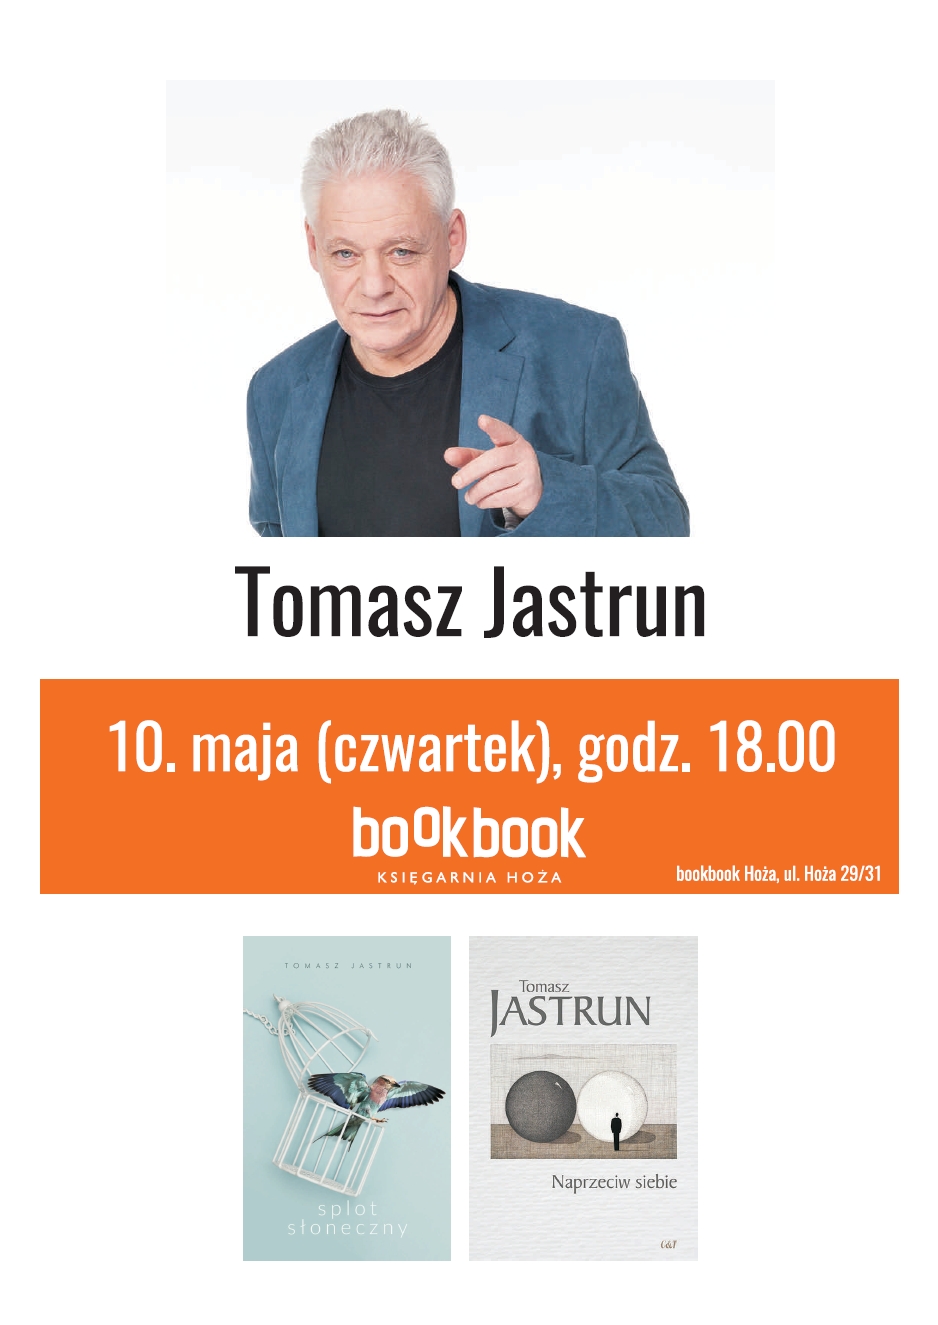  BookBook, spotkanie autorskie, Tomasz Jastrun 